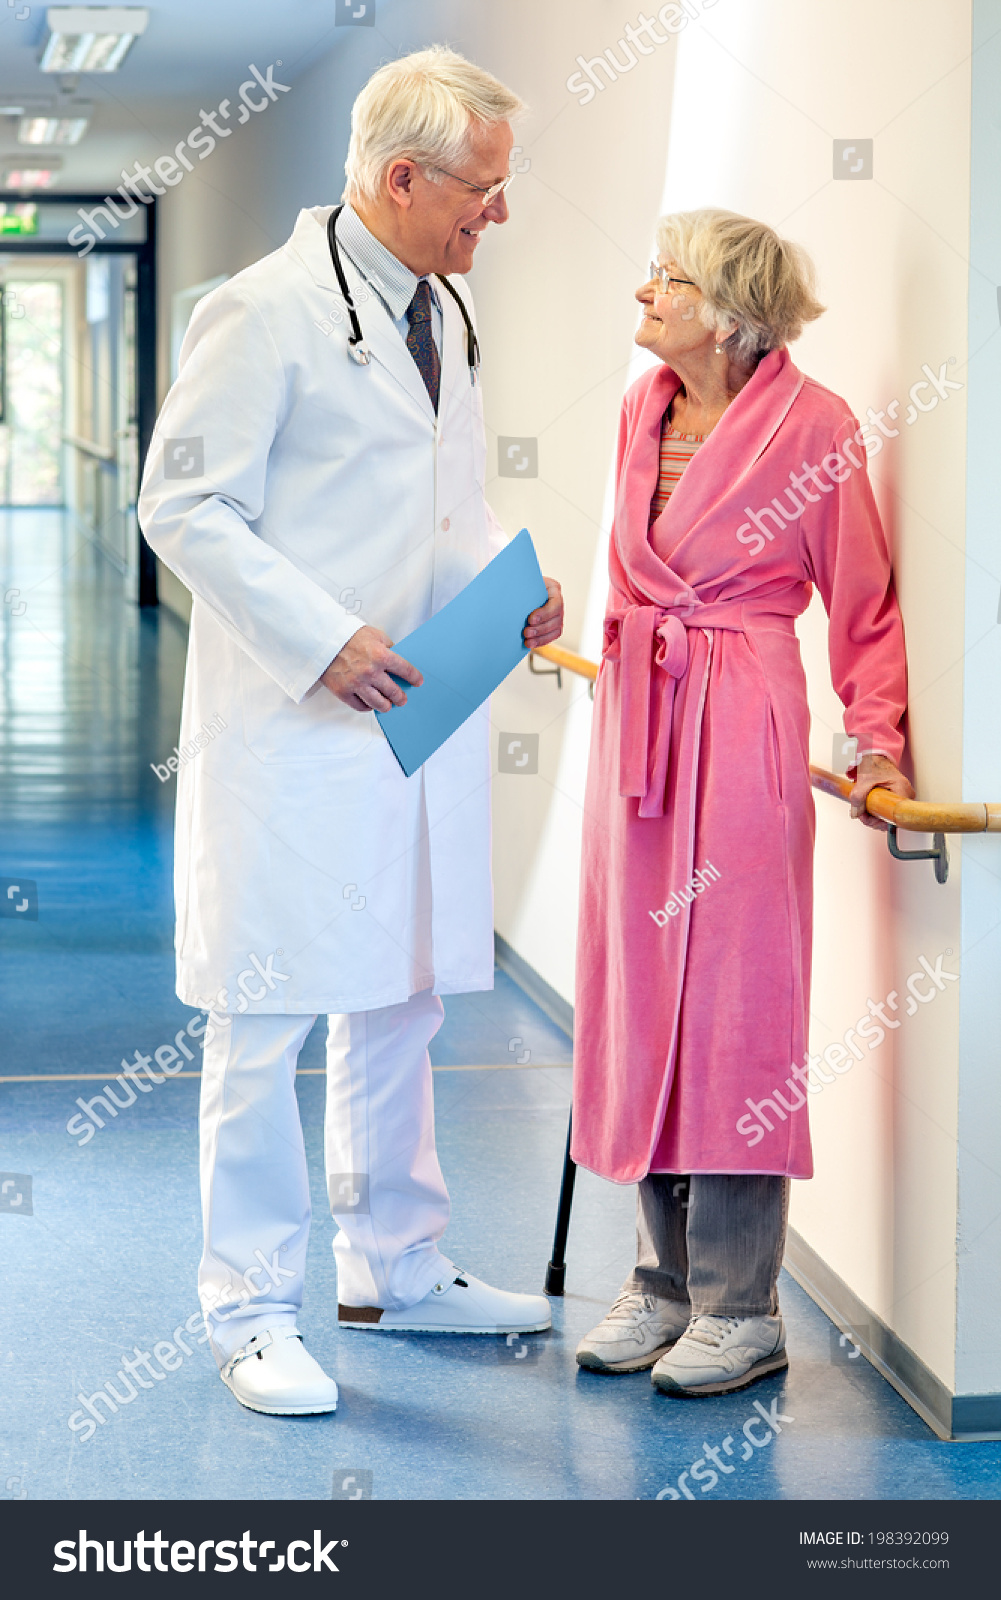 elderly ladies dressing gown